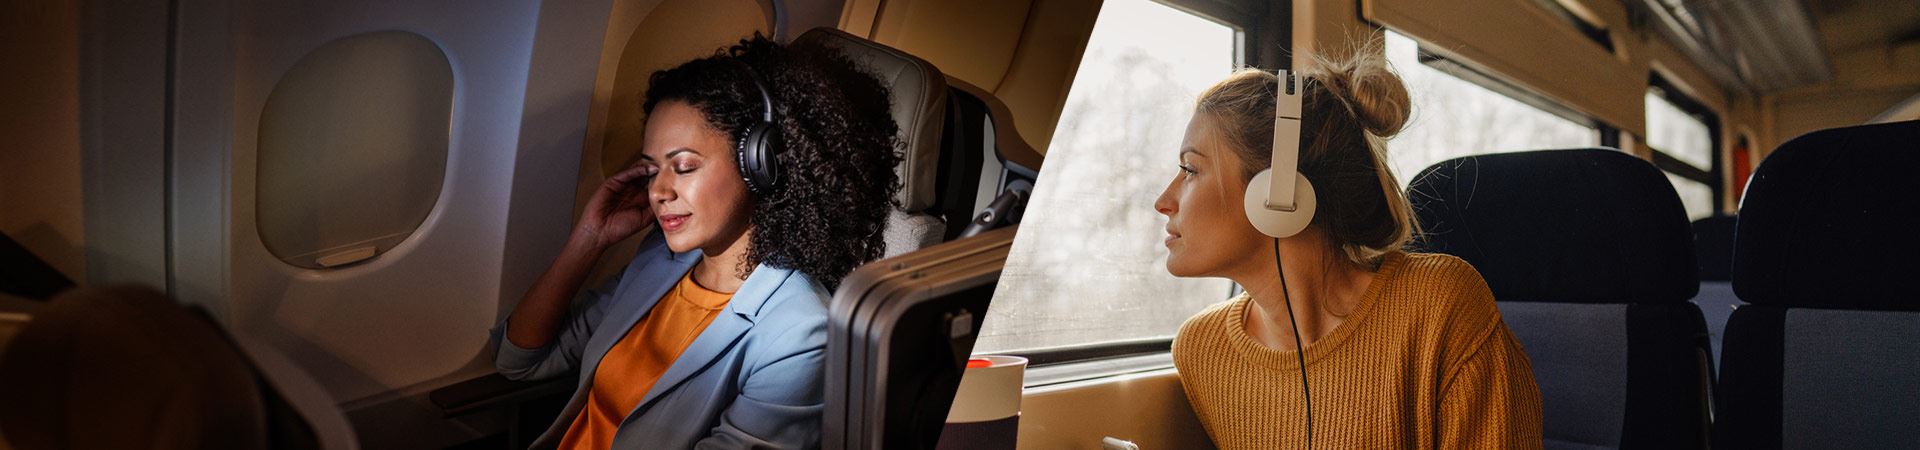 Po lewej stronie zdjęcie kobiety siedzącej wygodnie w samolocie. Po prawej stronie zdjęcie innej kobiety siedzącej w pociągu i wyglądającej przez okno. Obie używają słuchawek. Atmosfera w samolocie i pociągu jest spokojna, nie widać innych osób. 